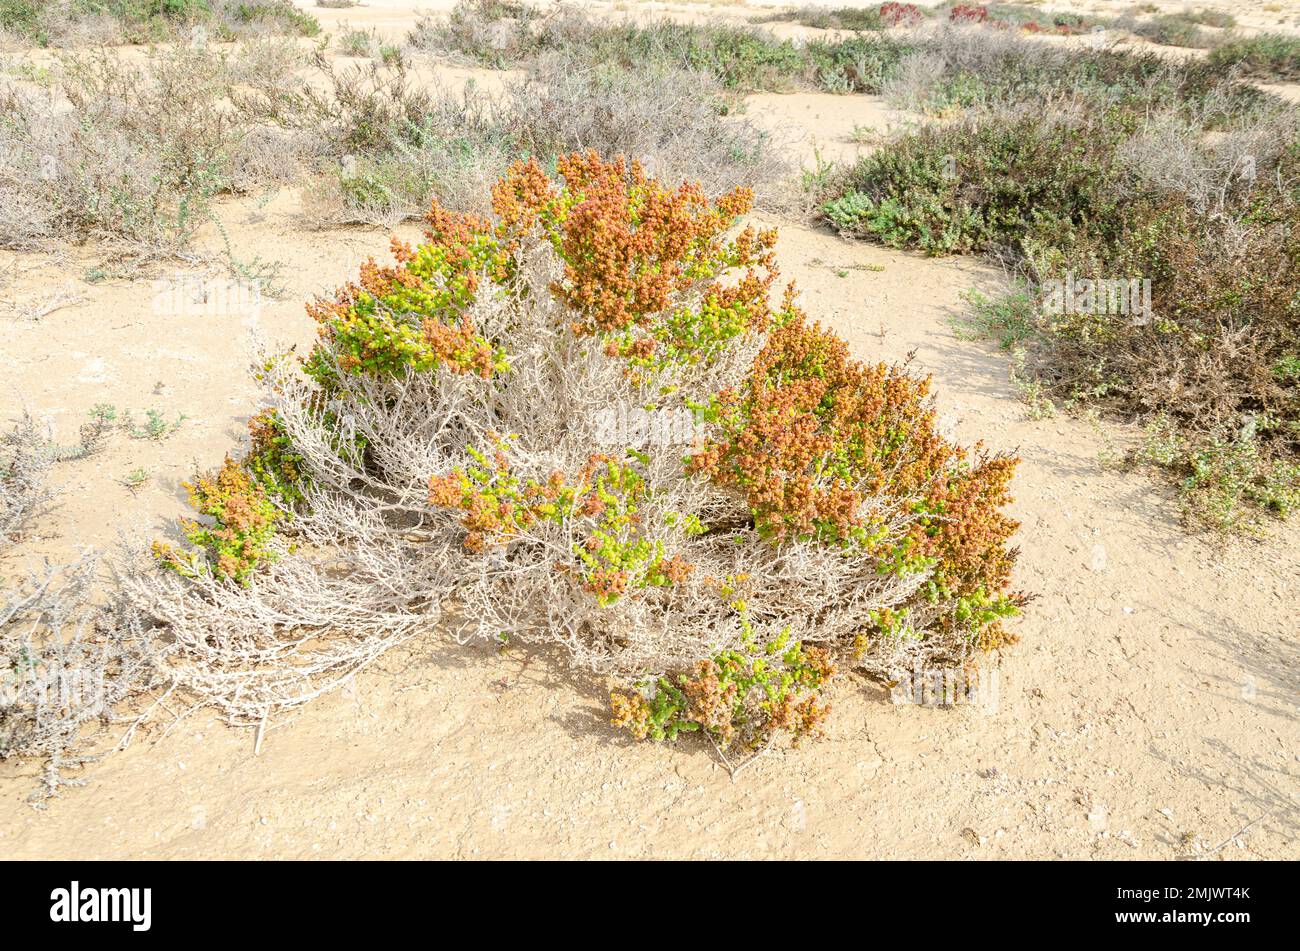 Arbuste dans le désert connu sous le nom de Khurreyz ou Khurreyza trouvé au Qatar Banque D'Images